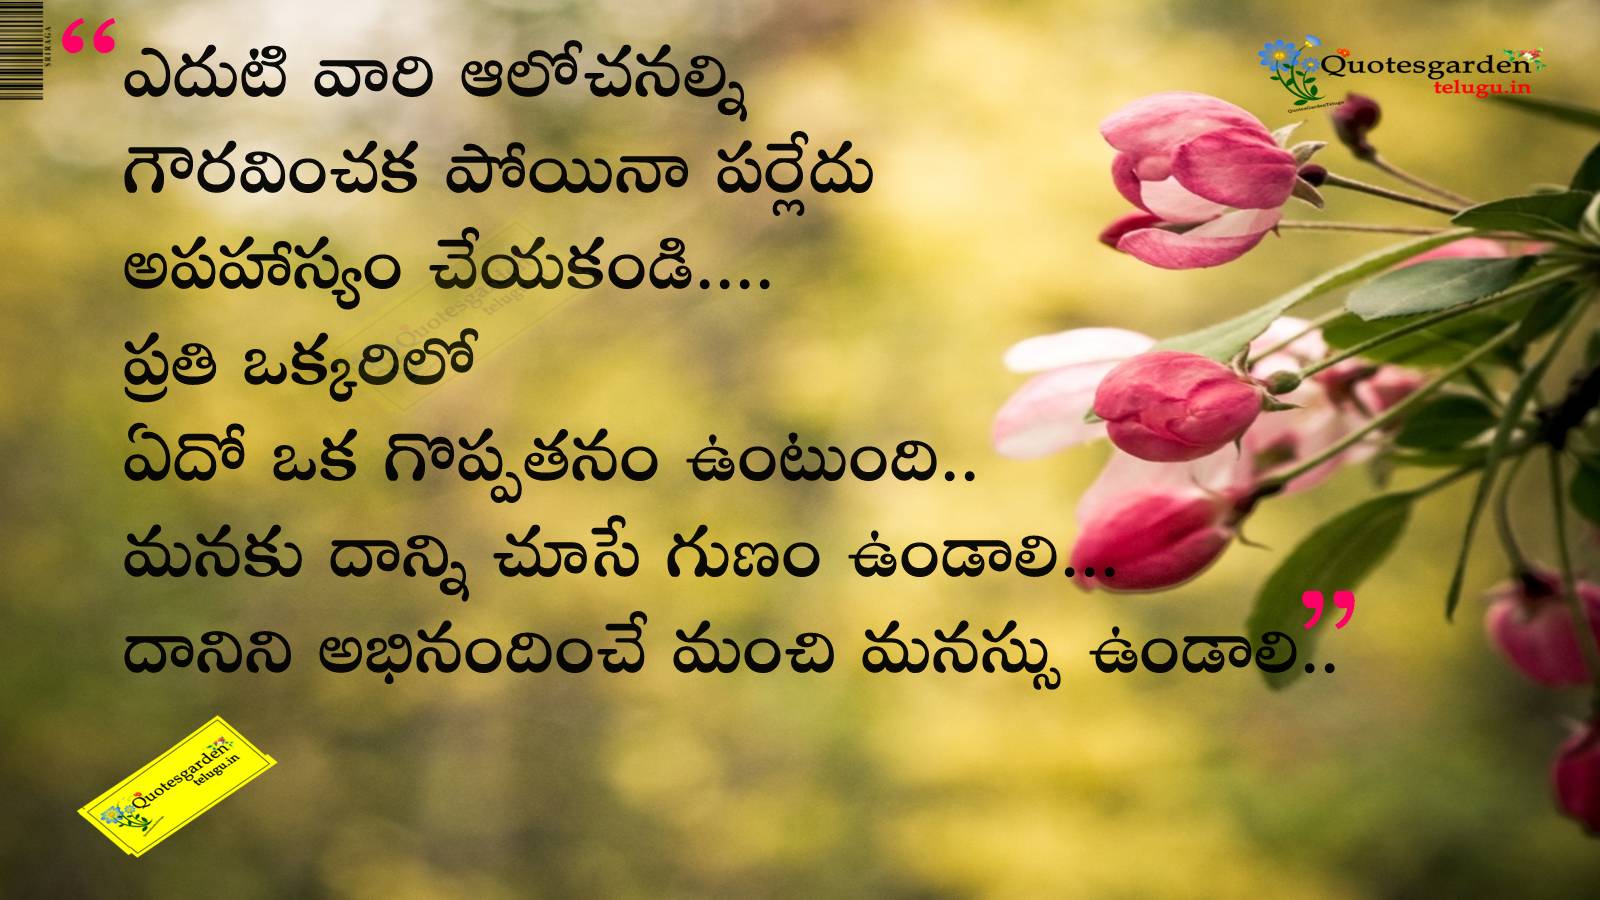 Best Telugu  good  morning  quotes  QUOTES  GARDEN TELUGU  